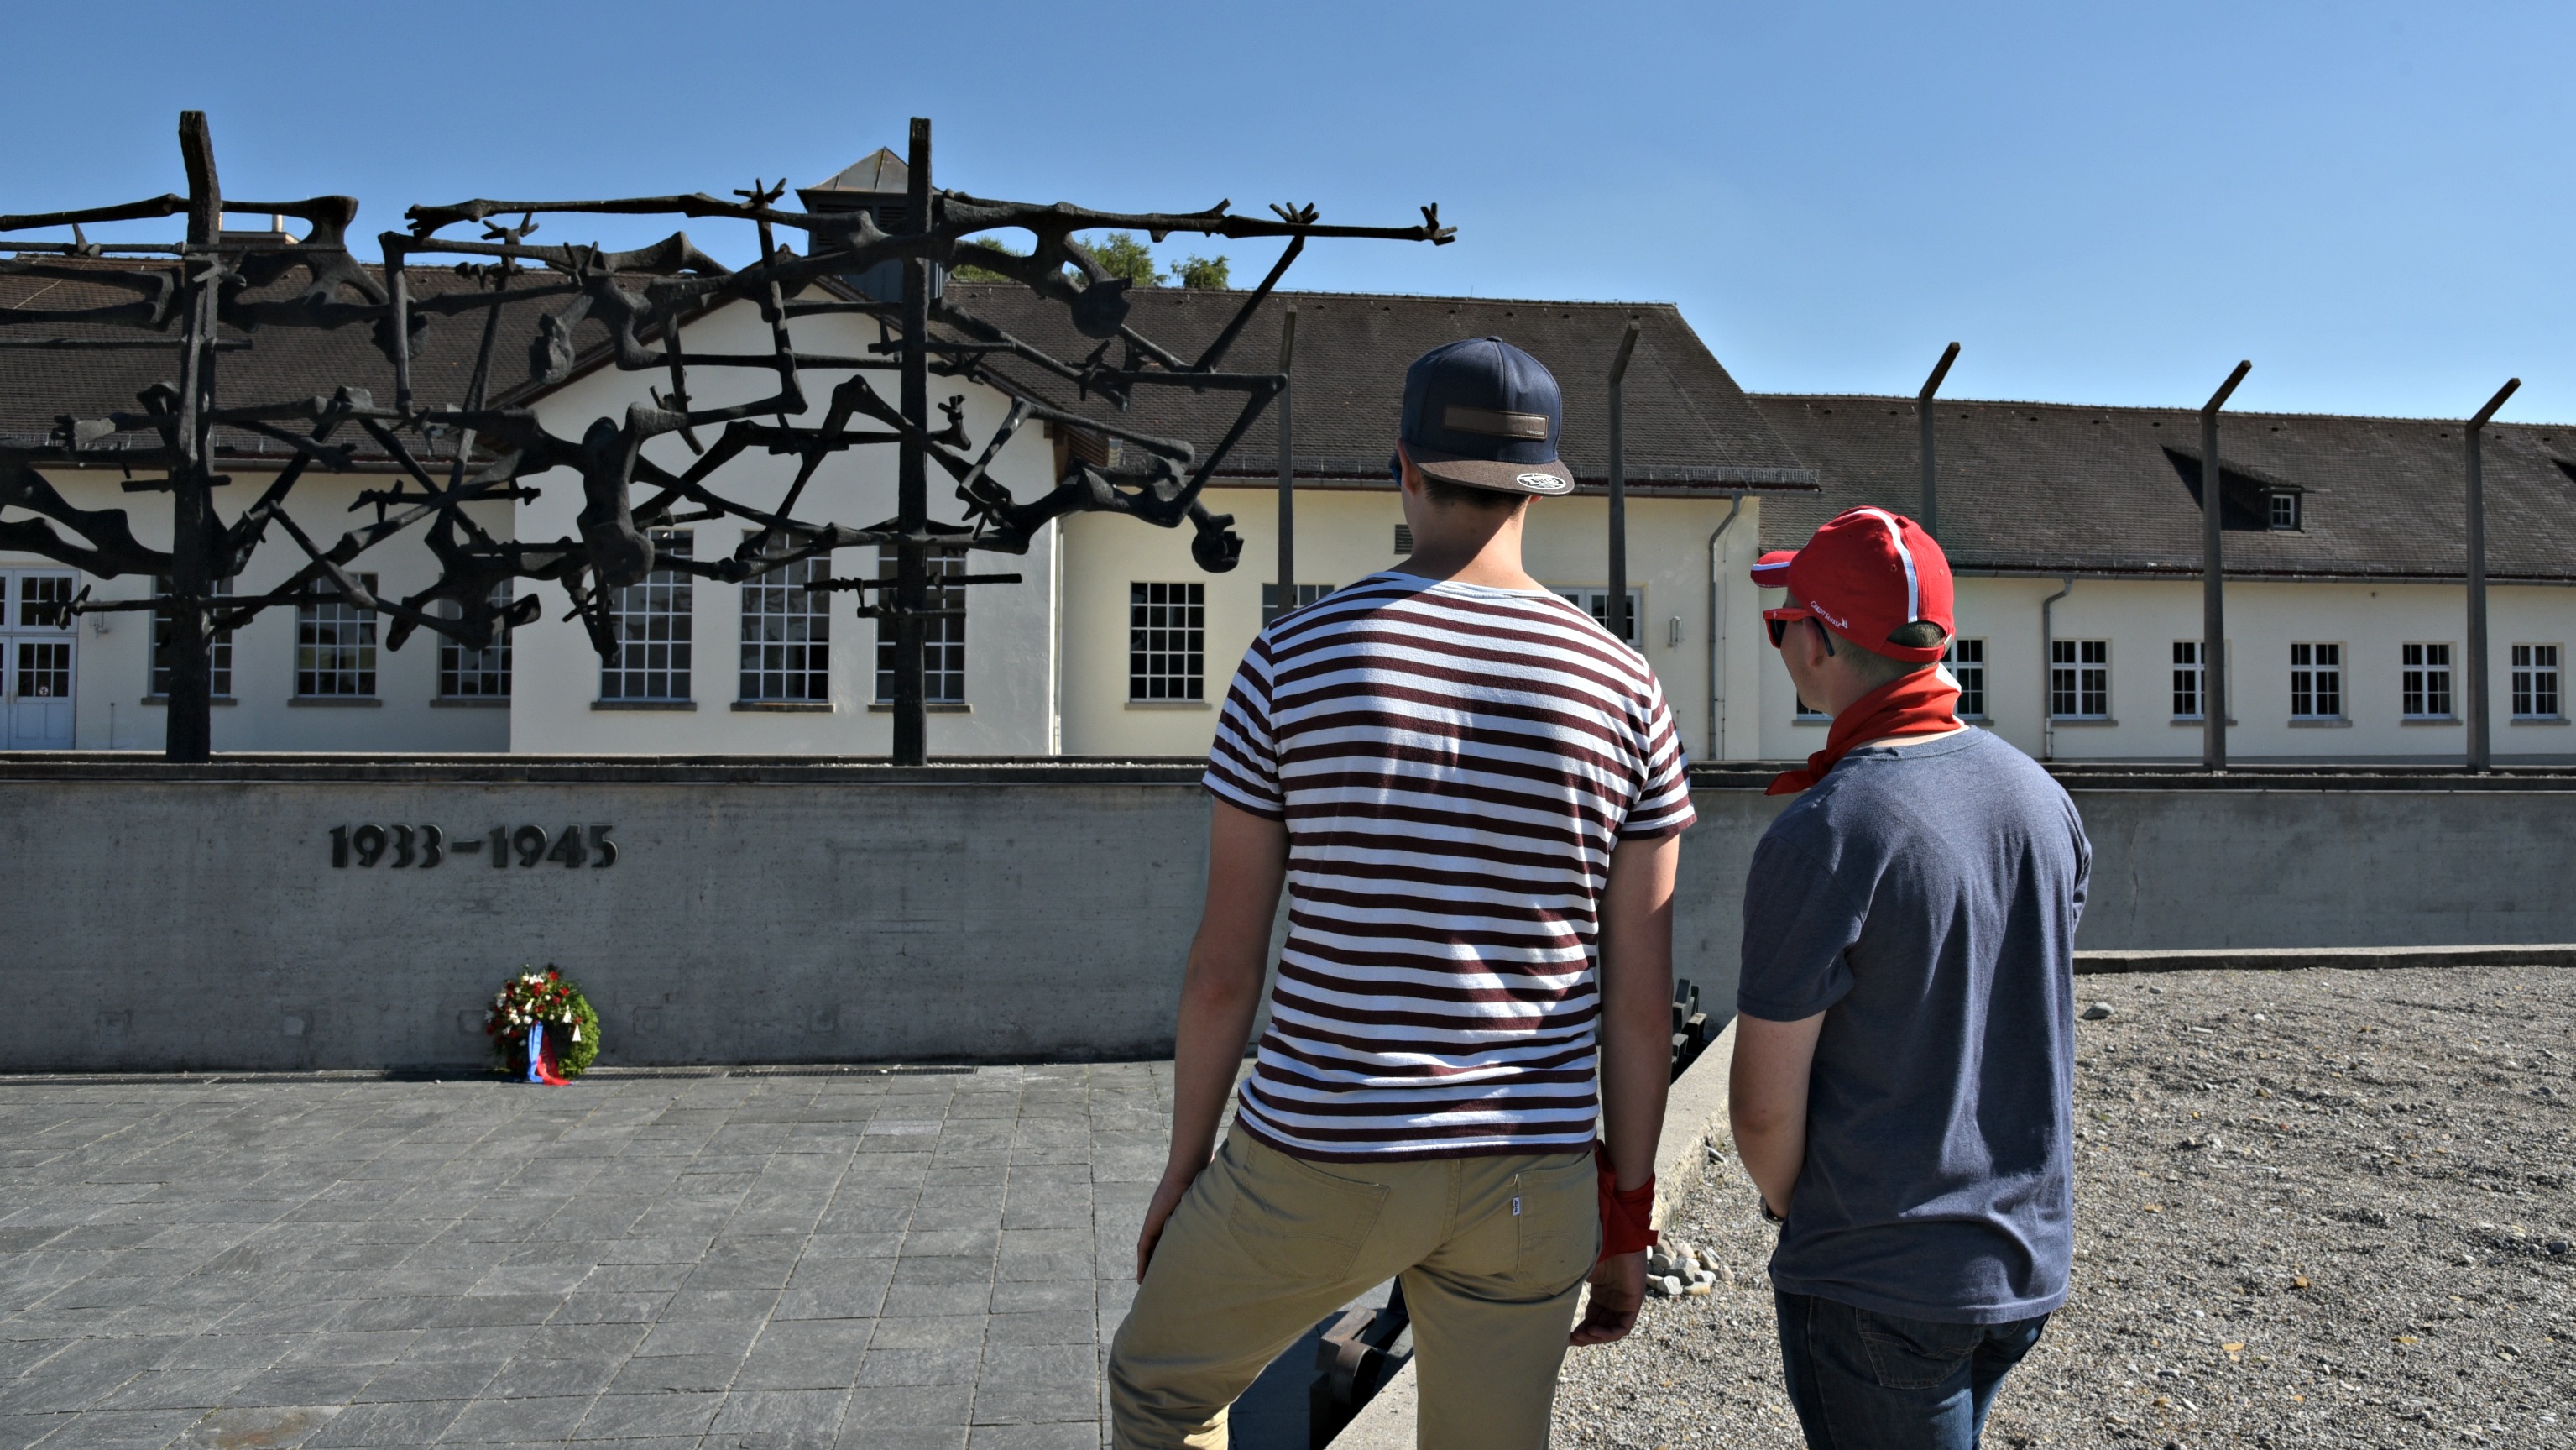 Le recueillement a marqué cette première journée à Dachau (Photo:Raphaël Zbinden)